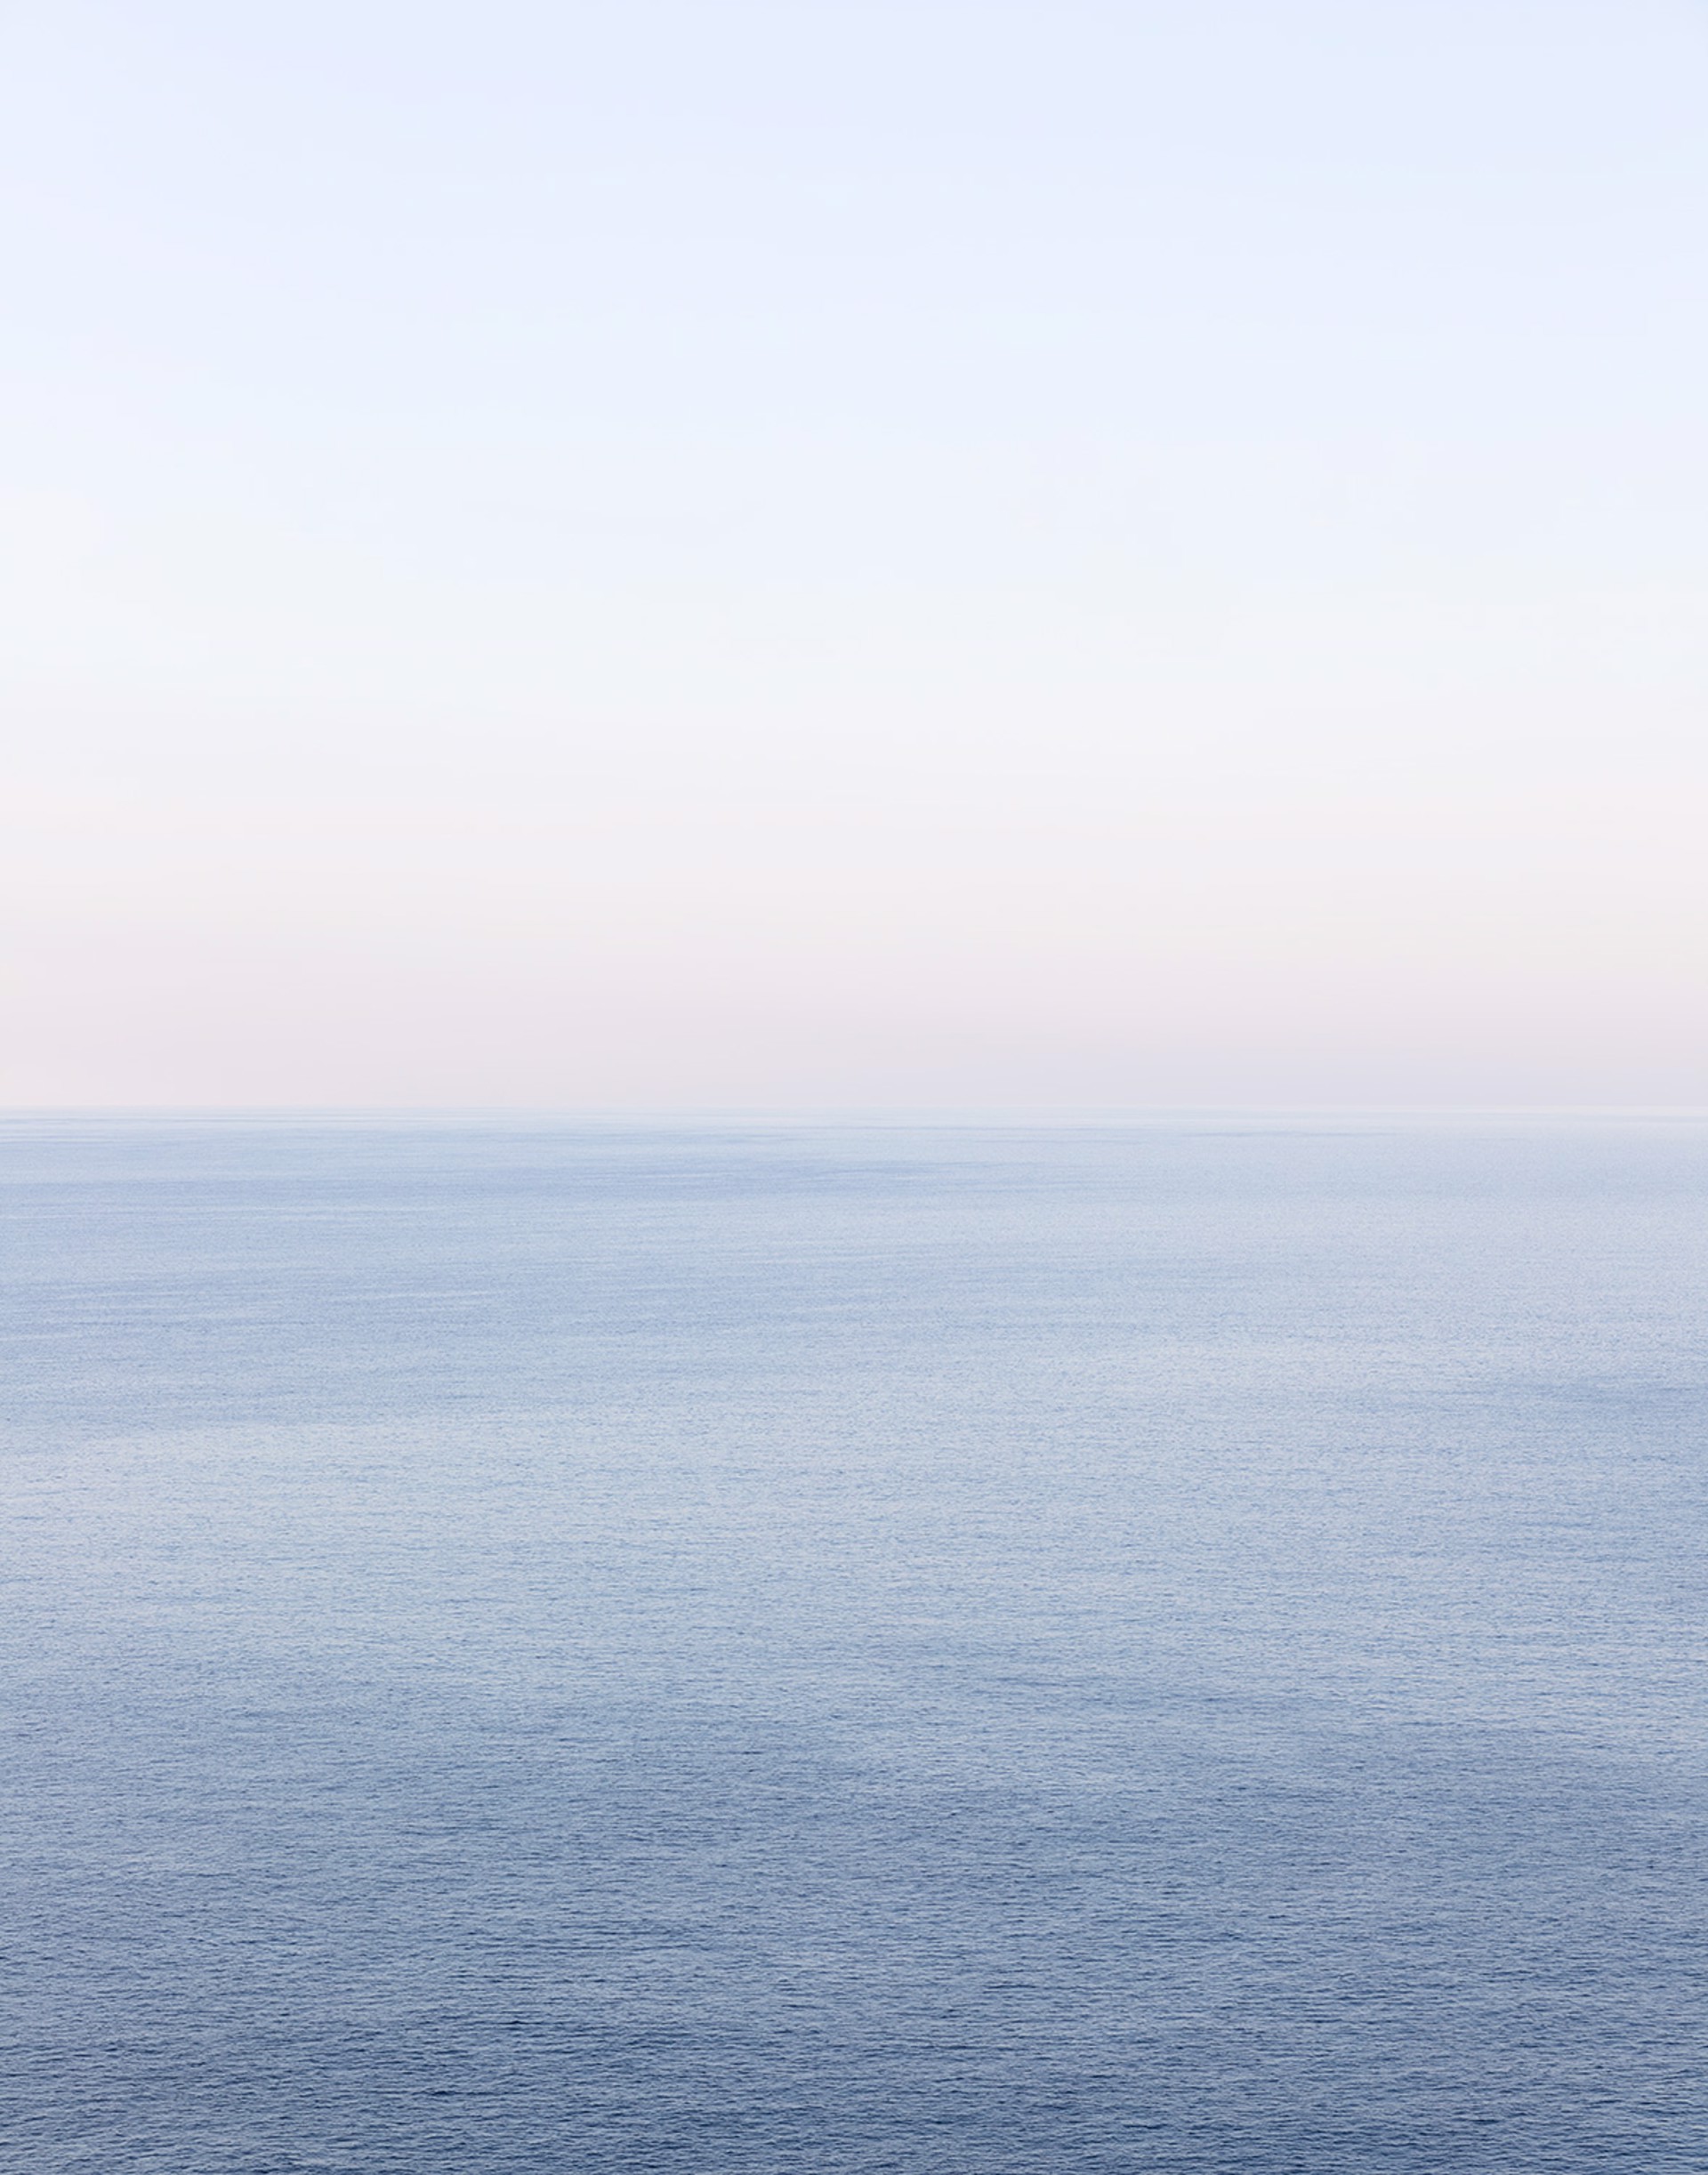 Horizon #8 Cala Galdana Menorca by Jonathan Smith